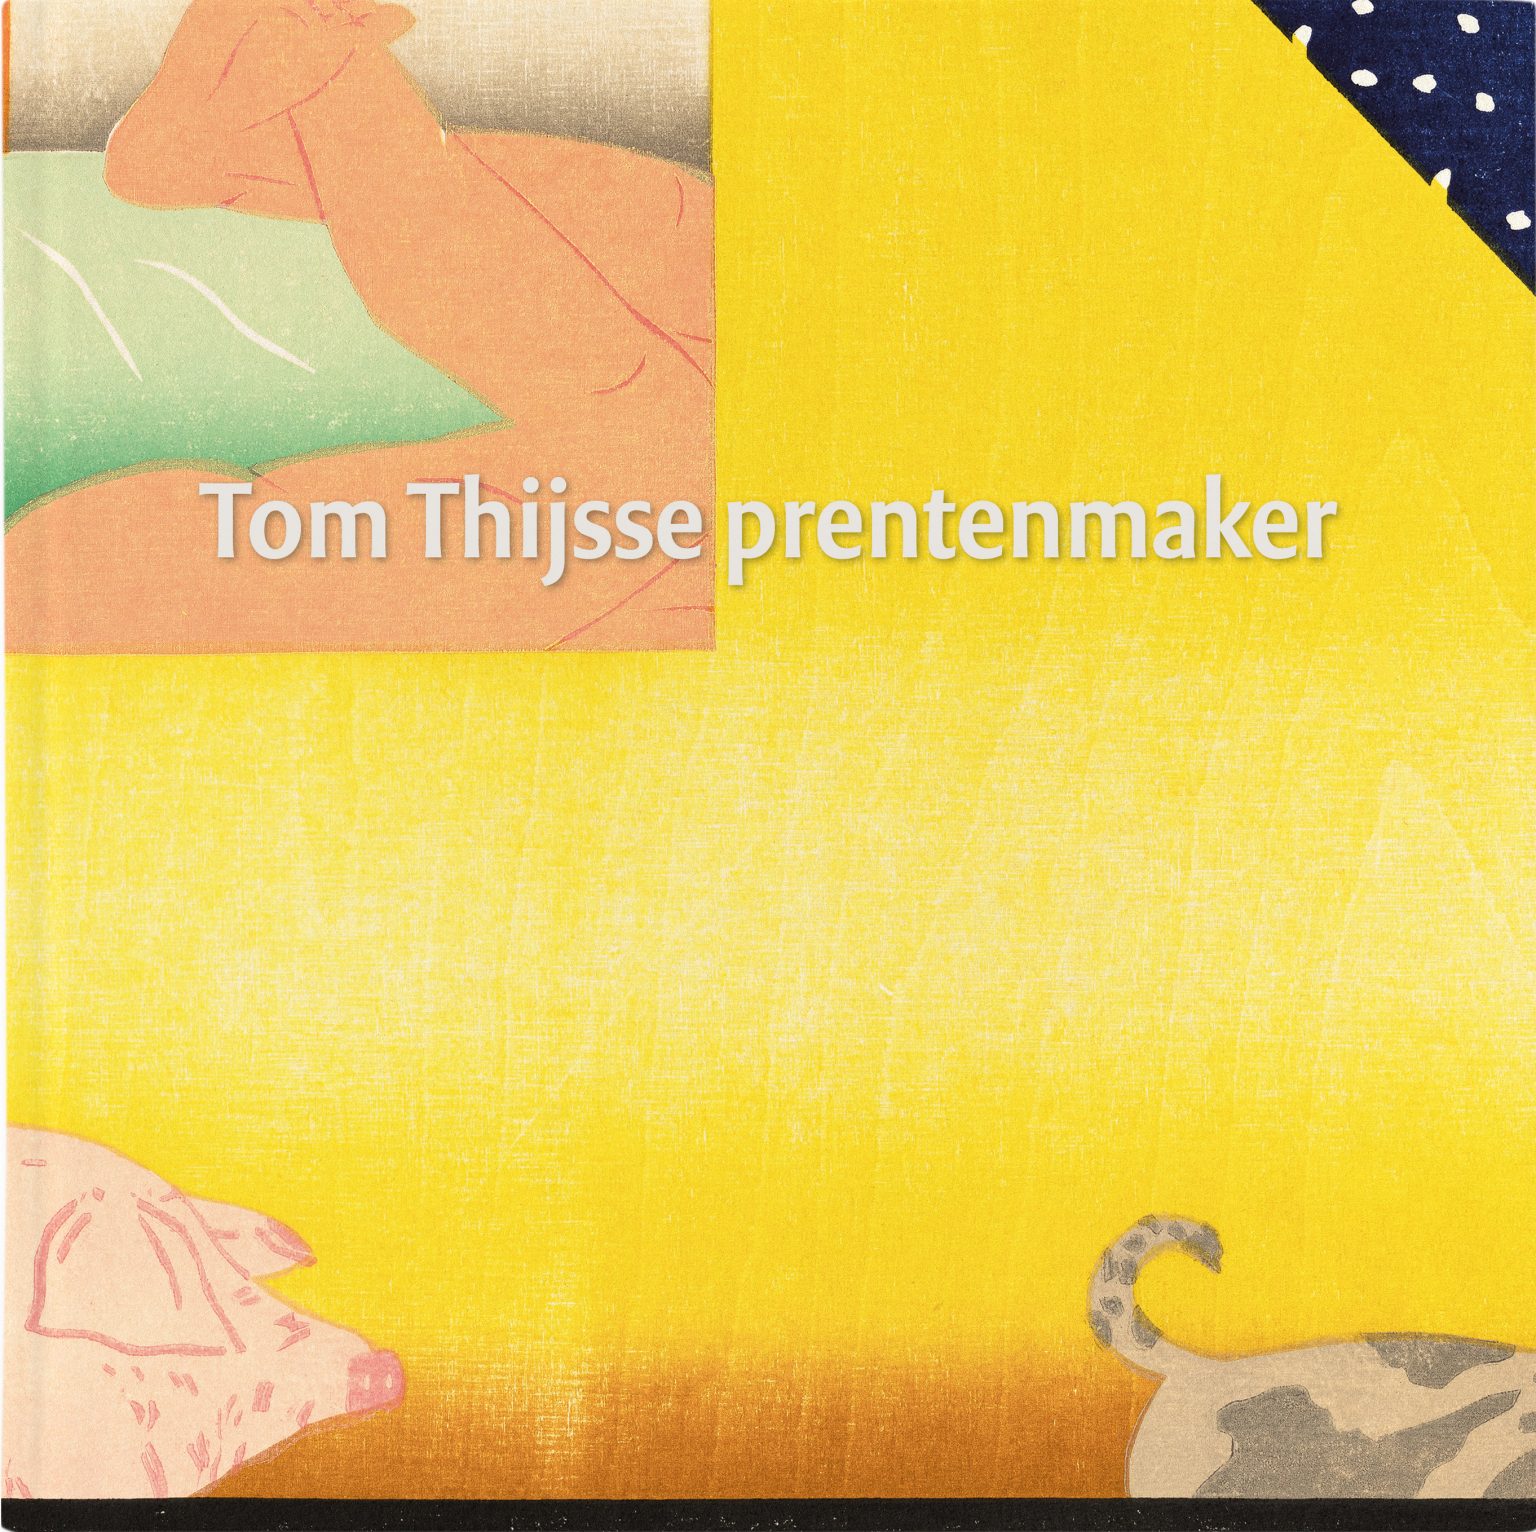 Boek Tom Thijsse prentenmaker